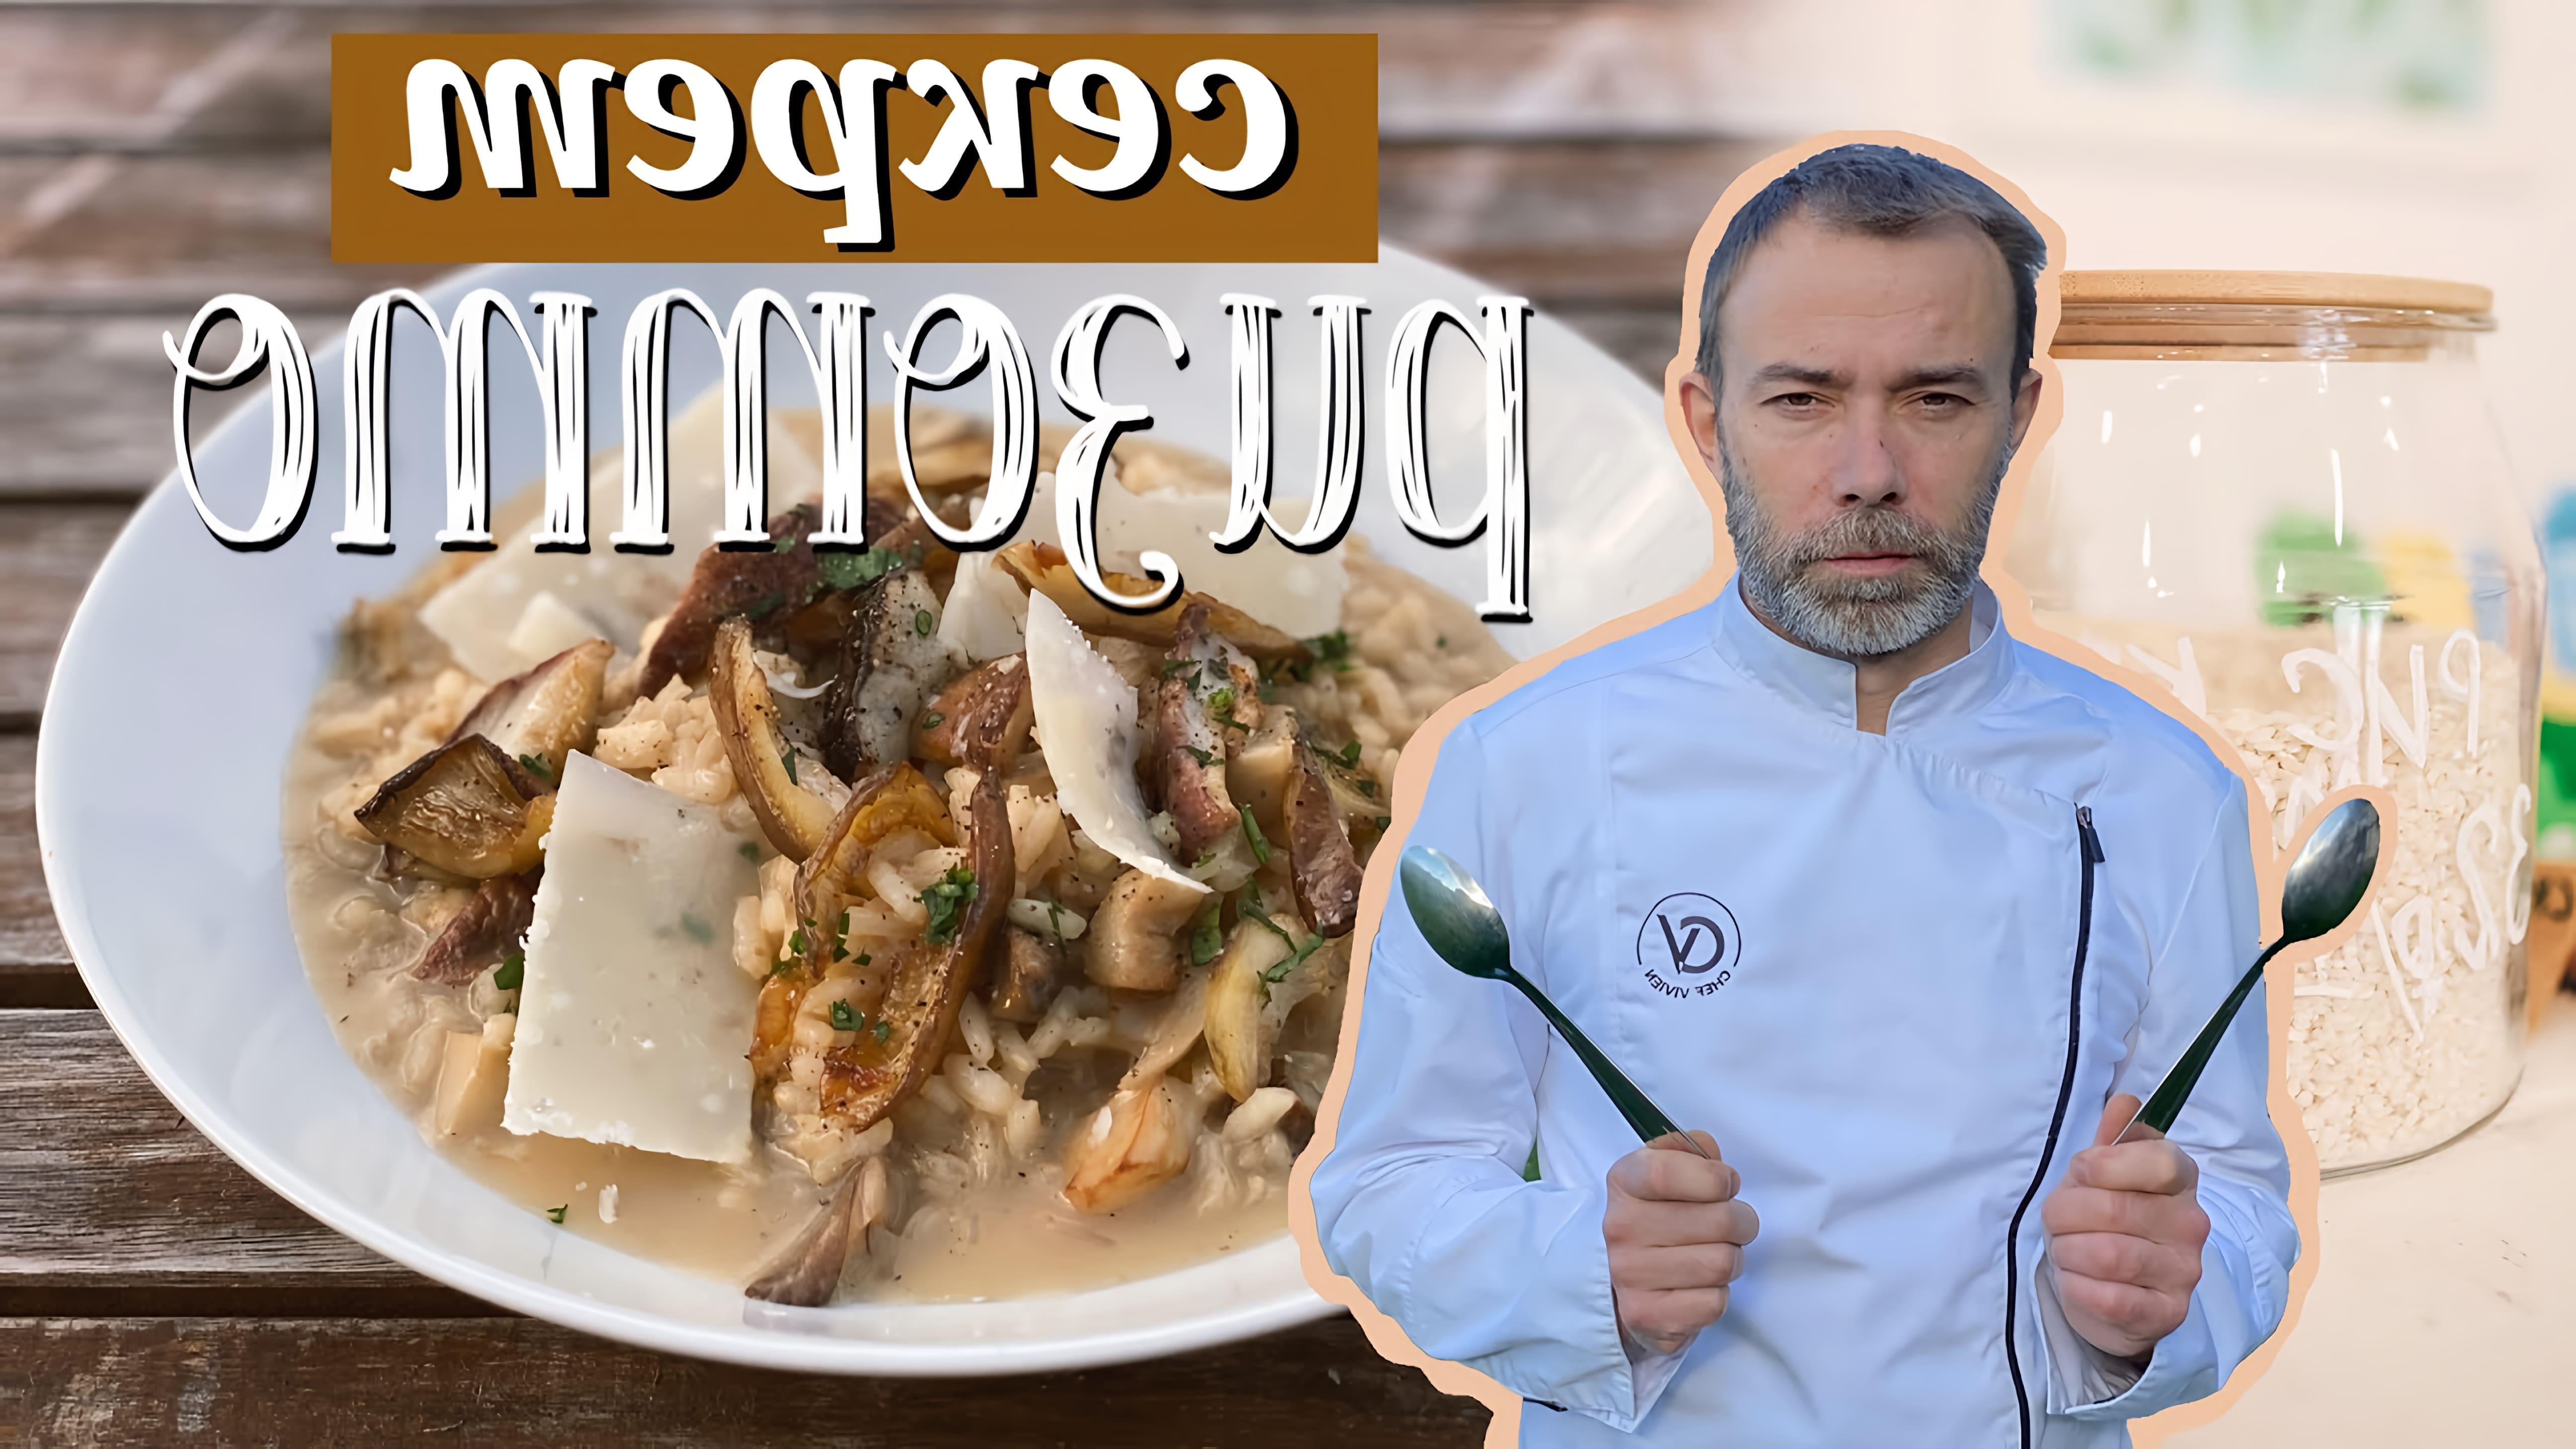 В этом видео-ролике шеф-повар покажет, как приготовить ризотто с грибами